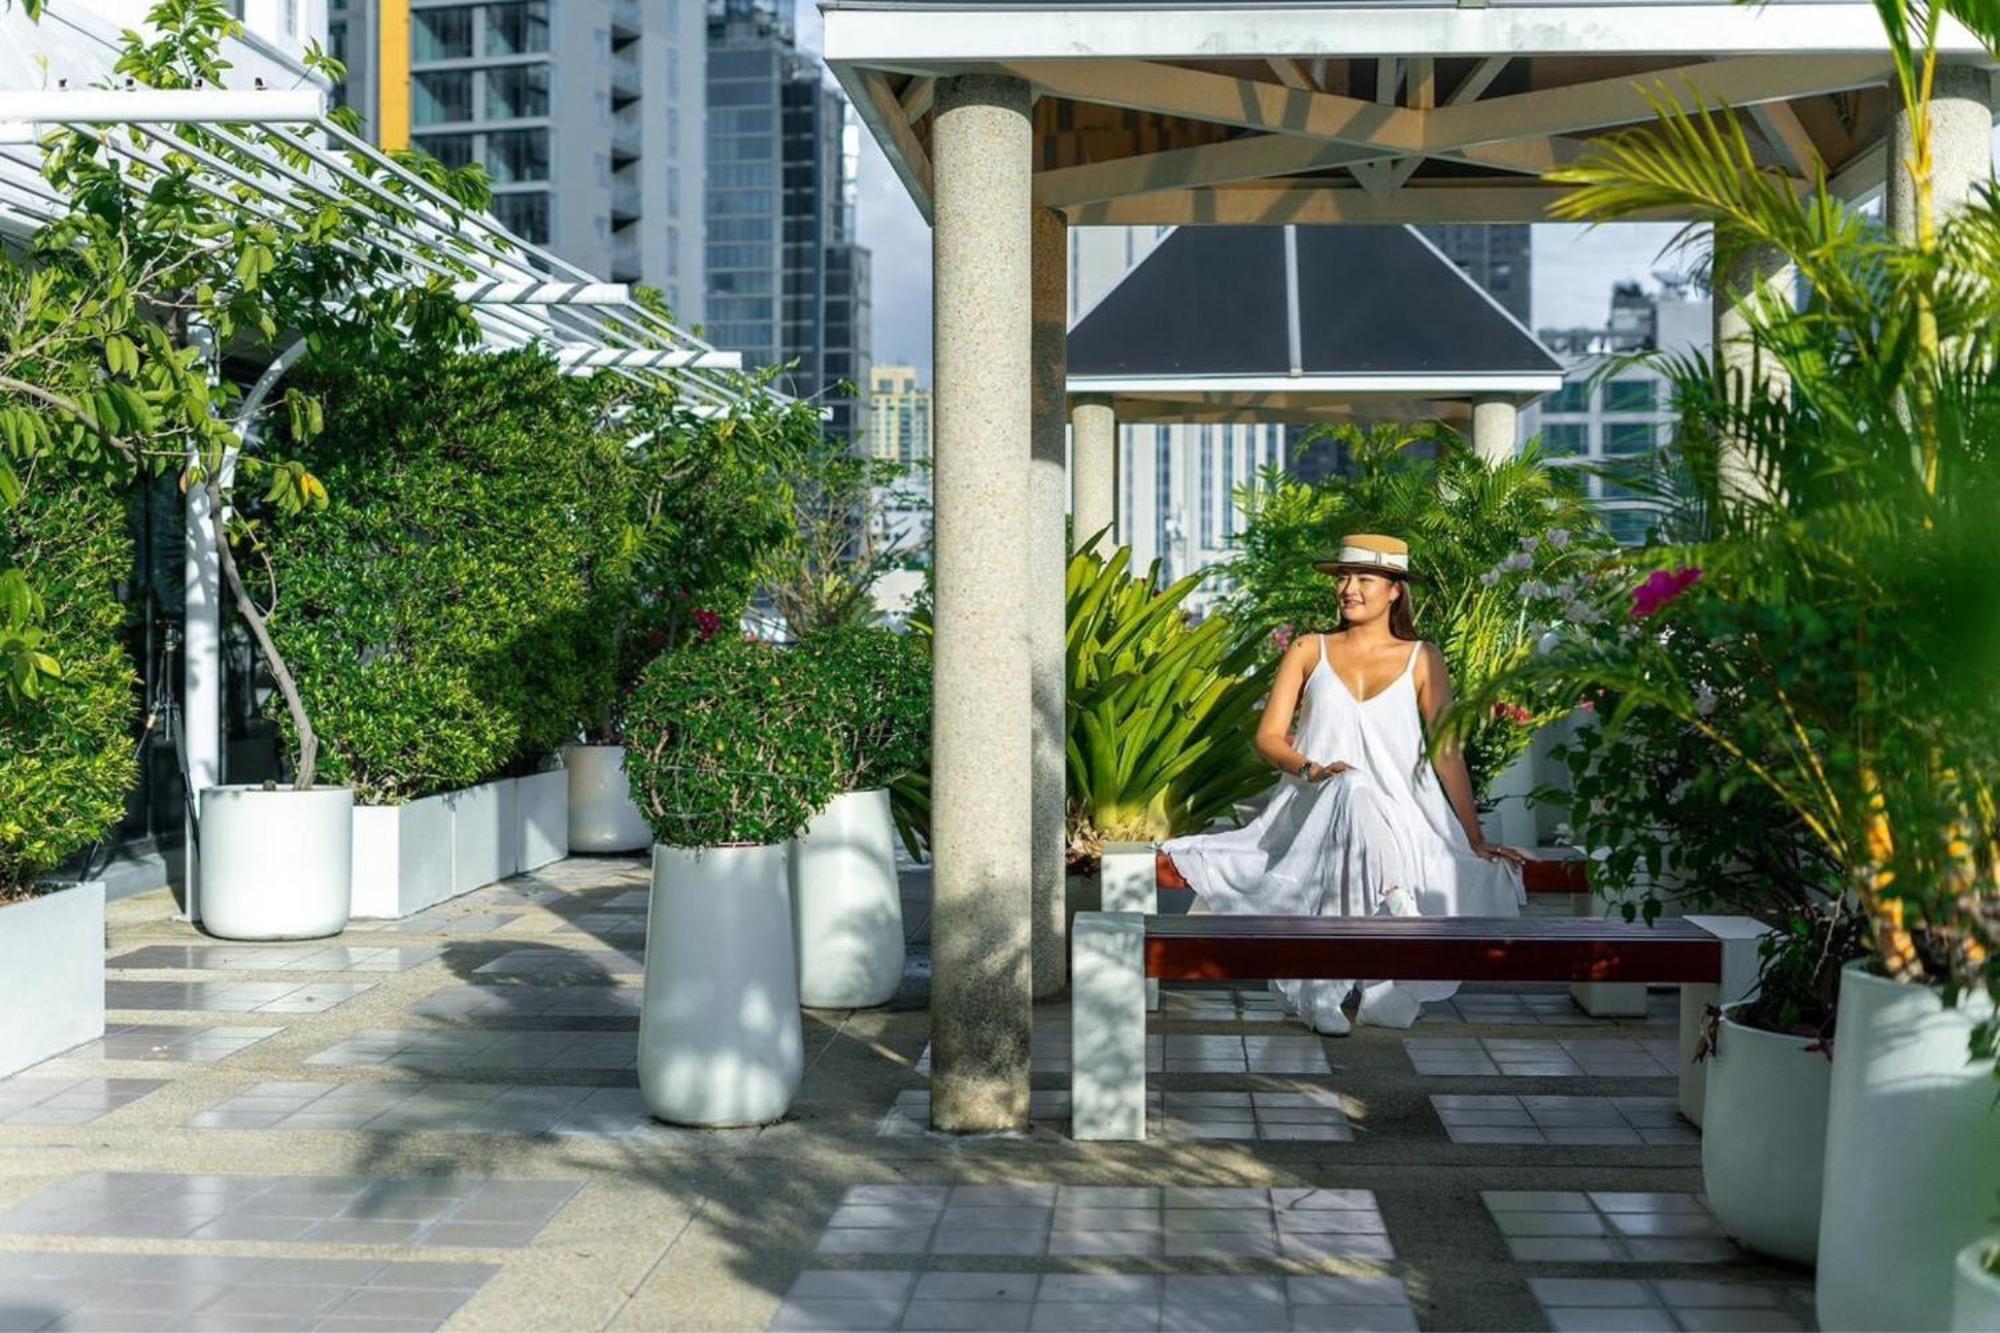 Parkroyal Suites Bangkok - Sha Plus Certified Eksteriør bilde